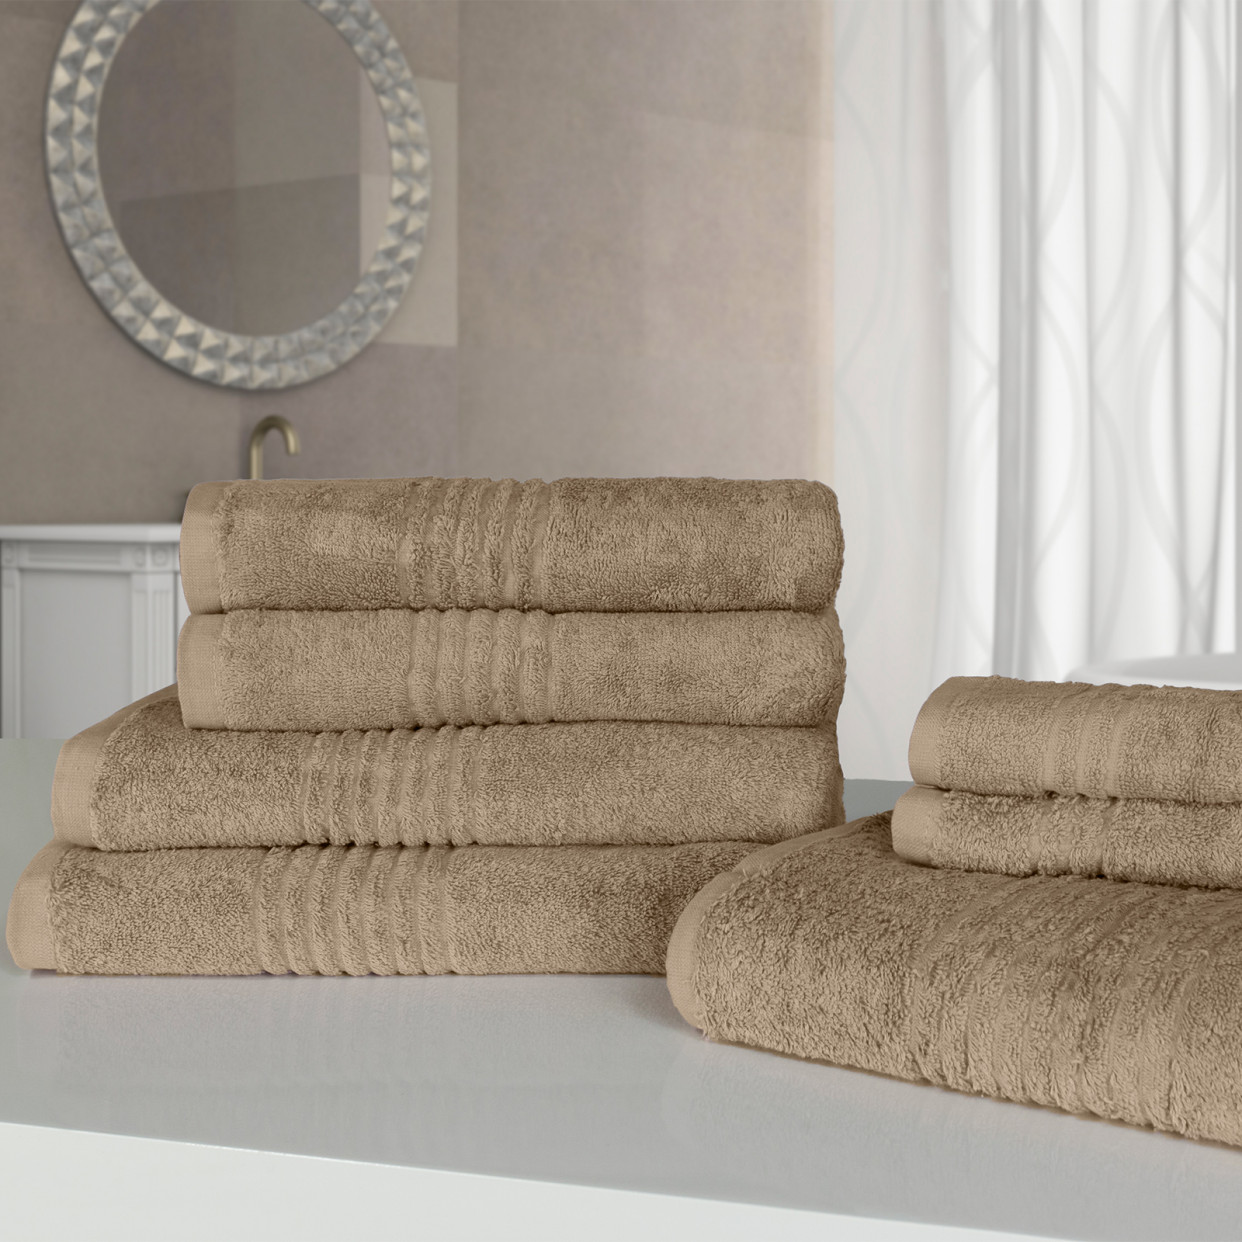 100% Cotton Towel Bale Set, 7 Piece - Natural Latte>